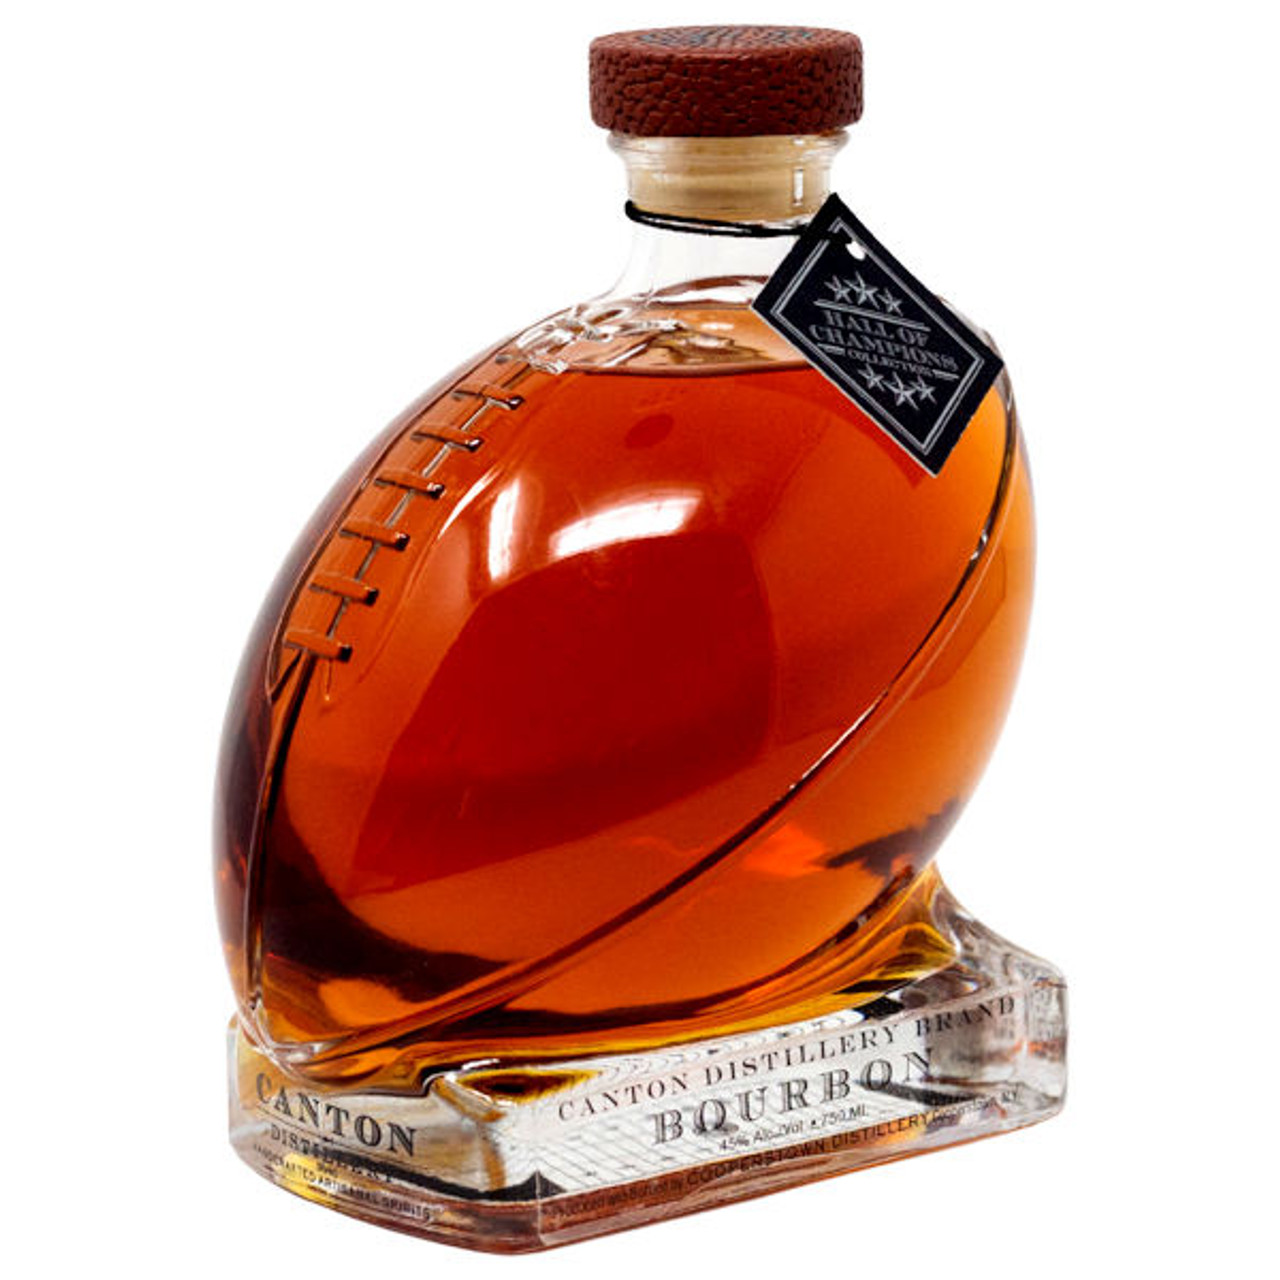 canton distillery bourbon